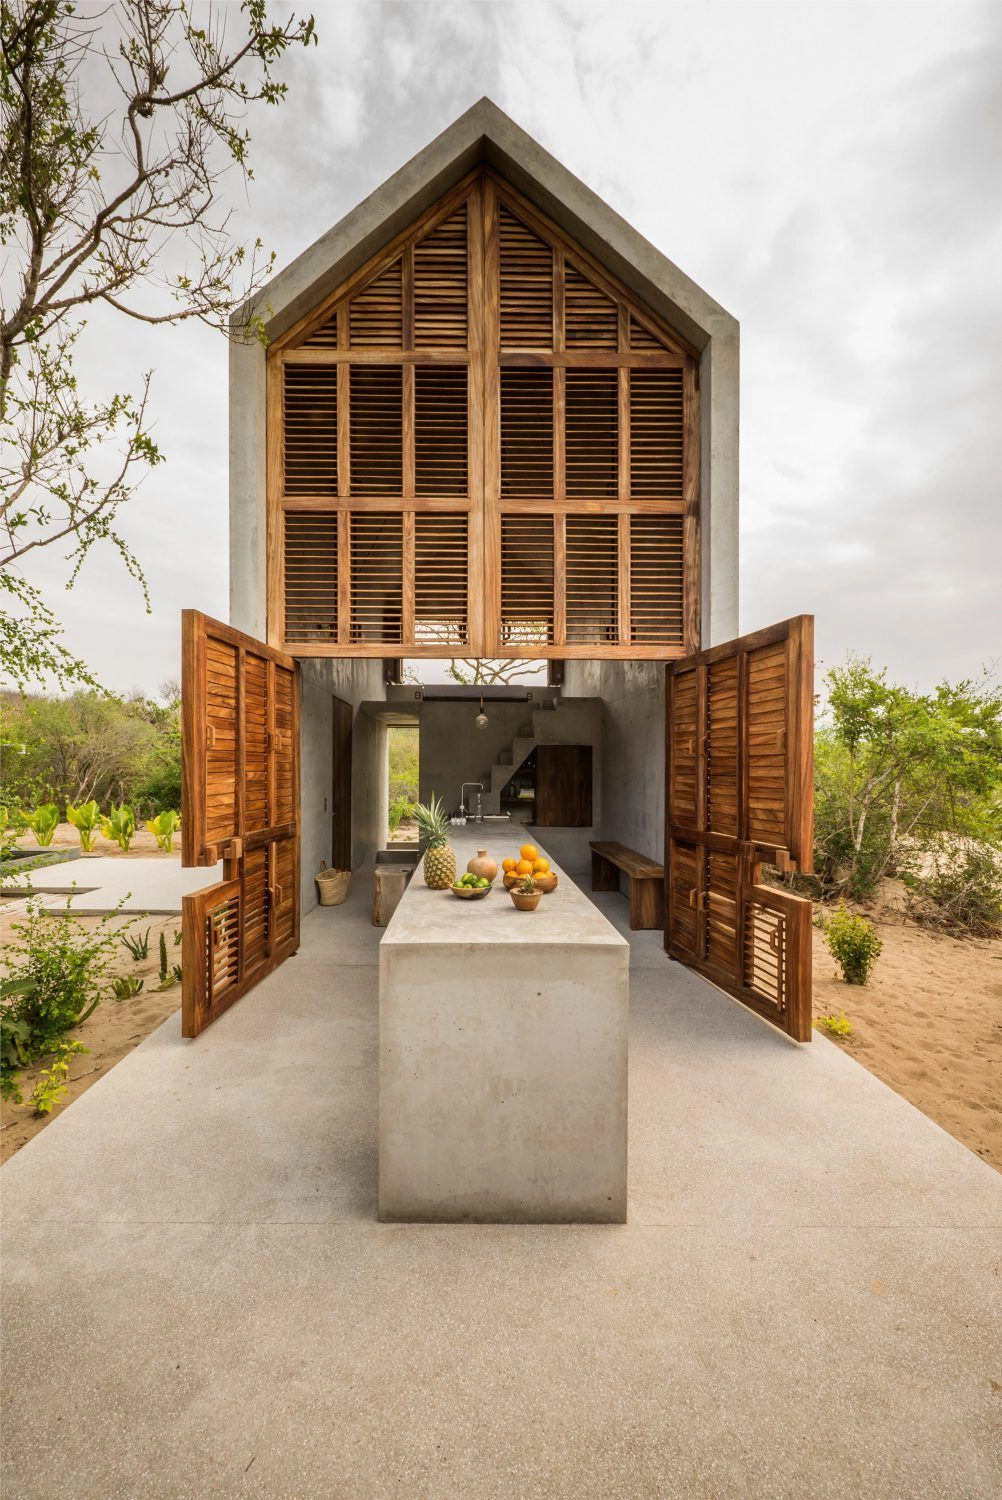 Casa Tiny to ascetyczny domek w Meksyku